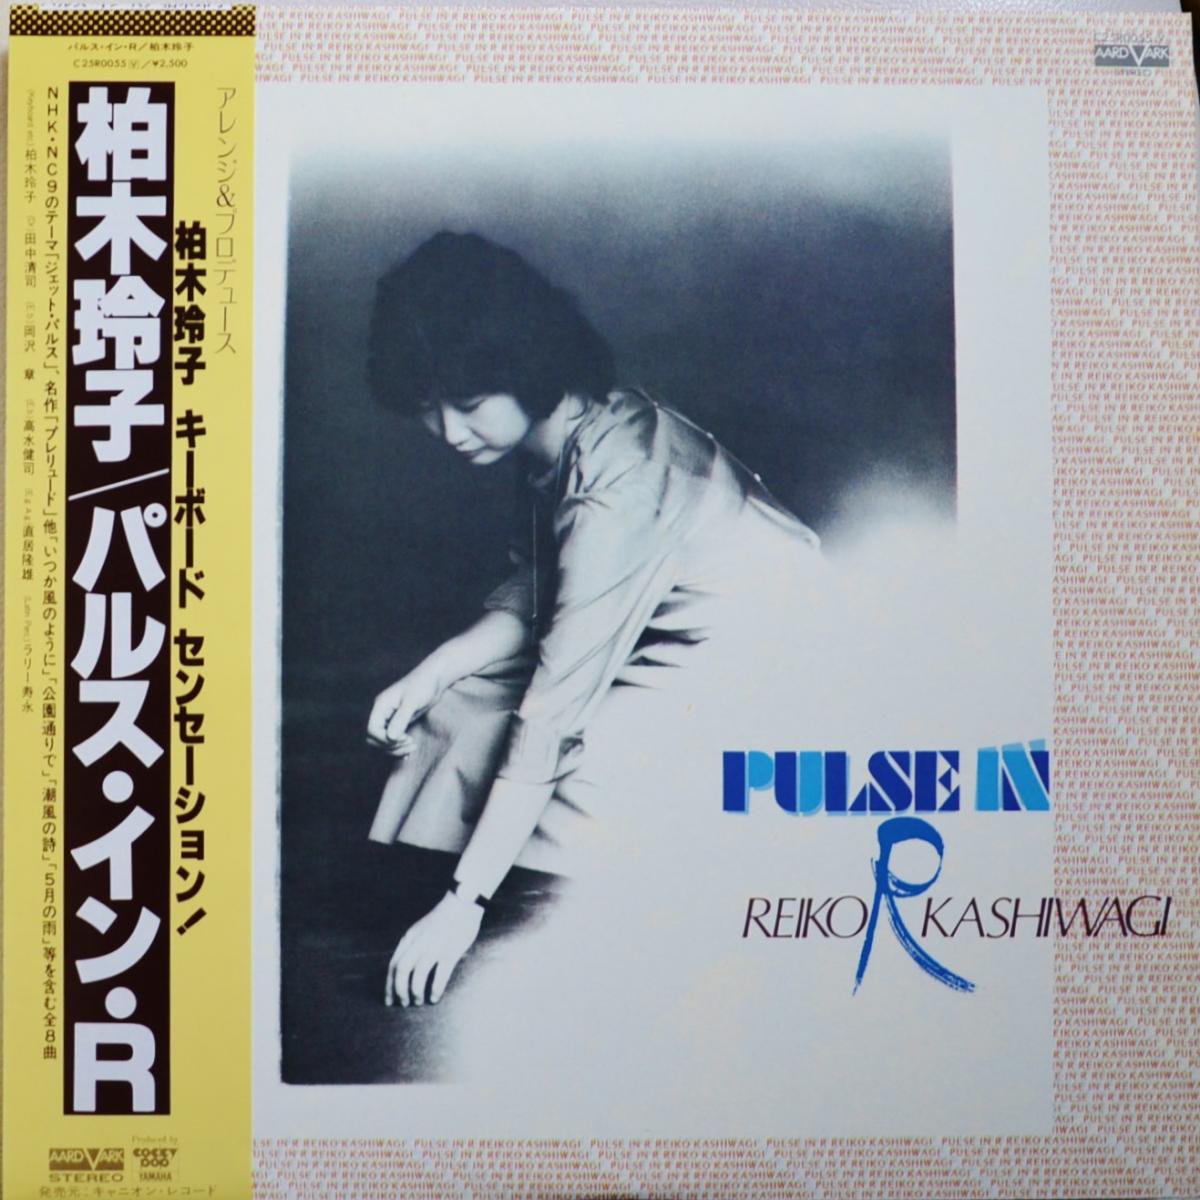 柏木玲子 REIKO KASHIWAGI / パルス・イン・R / PULSE IN R (LP)